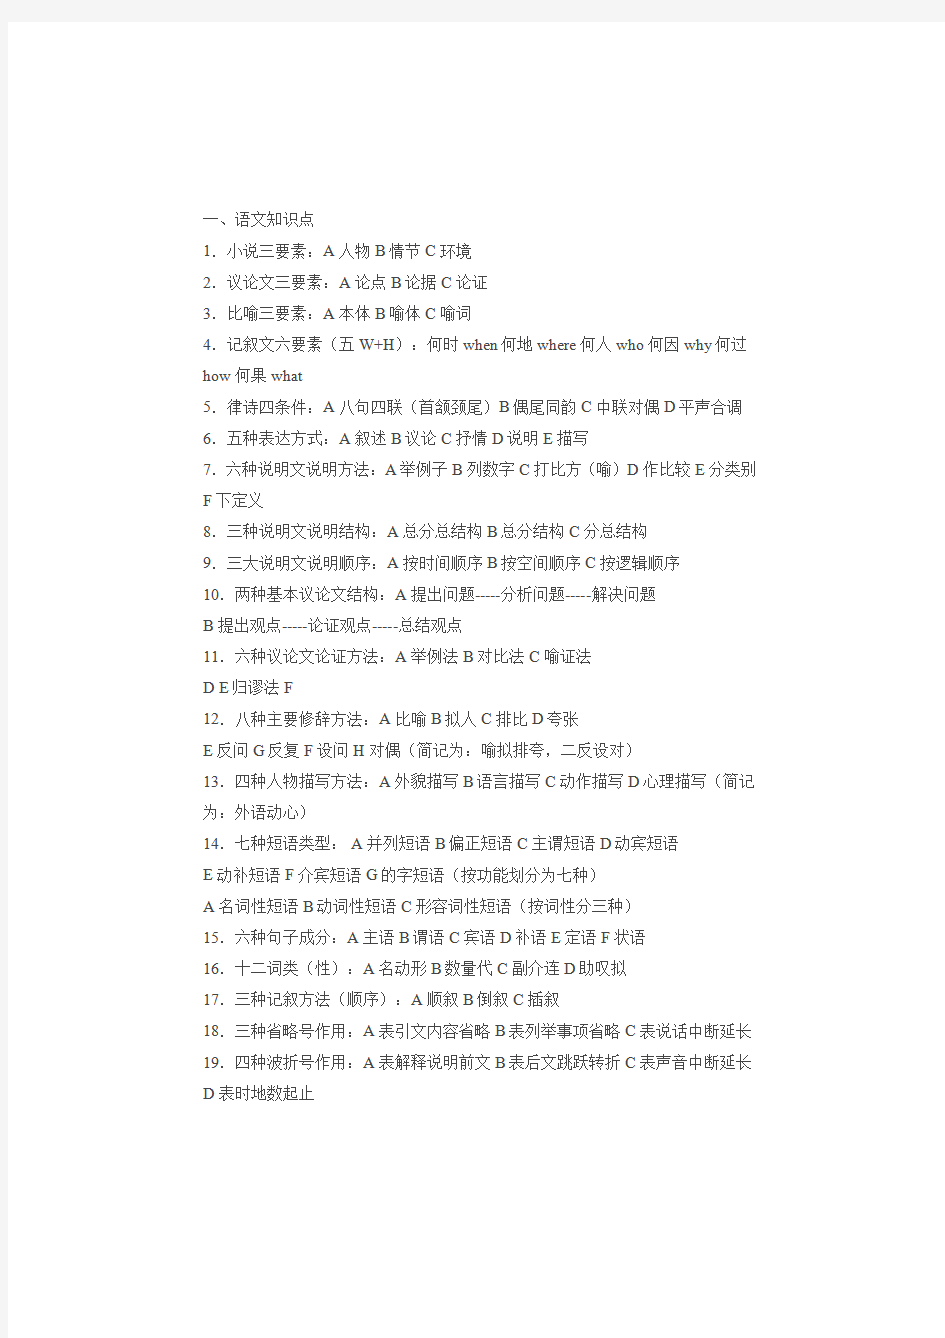 语文基础知识手册电子版,初中语文基础知识点归纳 (详解版)